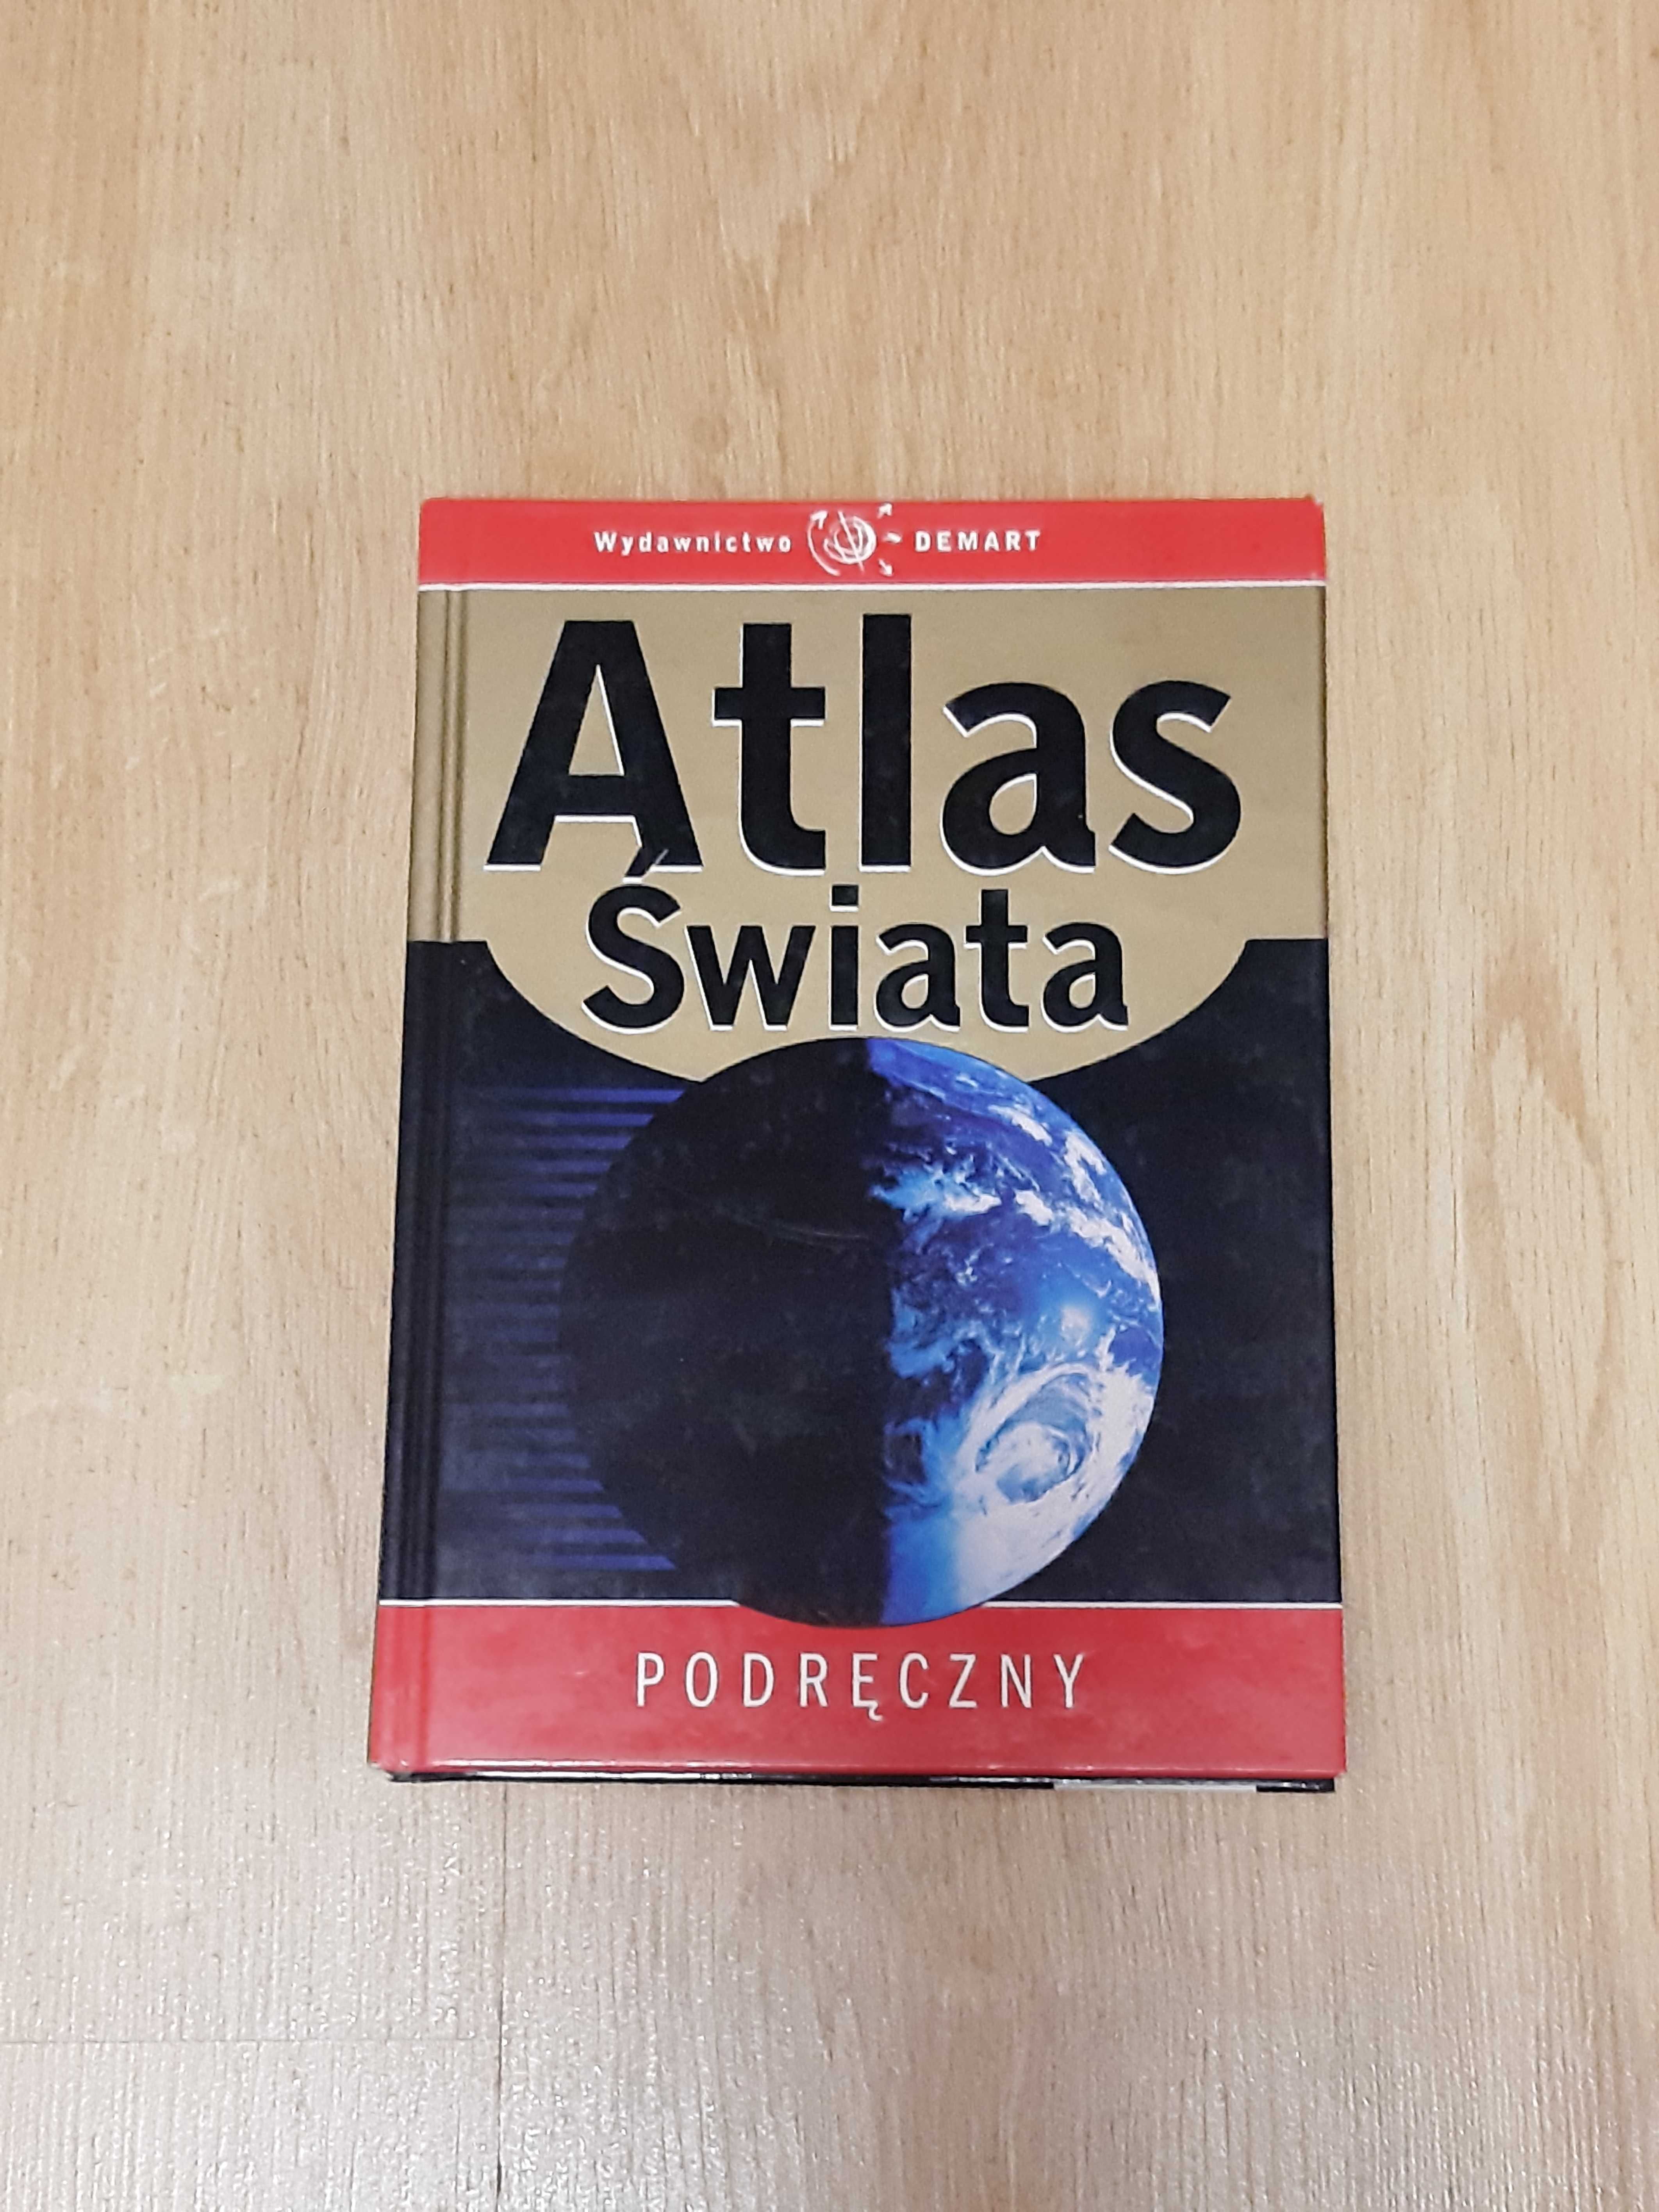 Podręczny Atlas Świata Wyd. DEMART